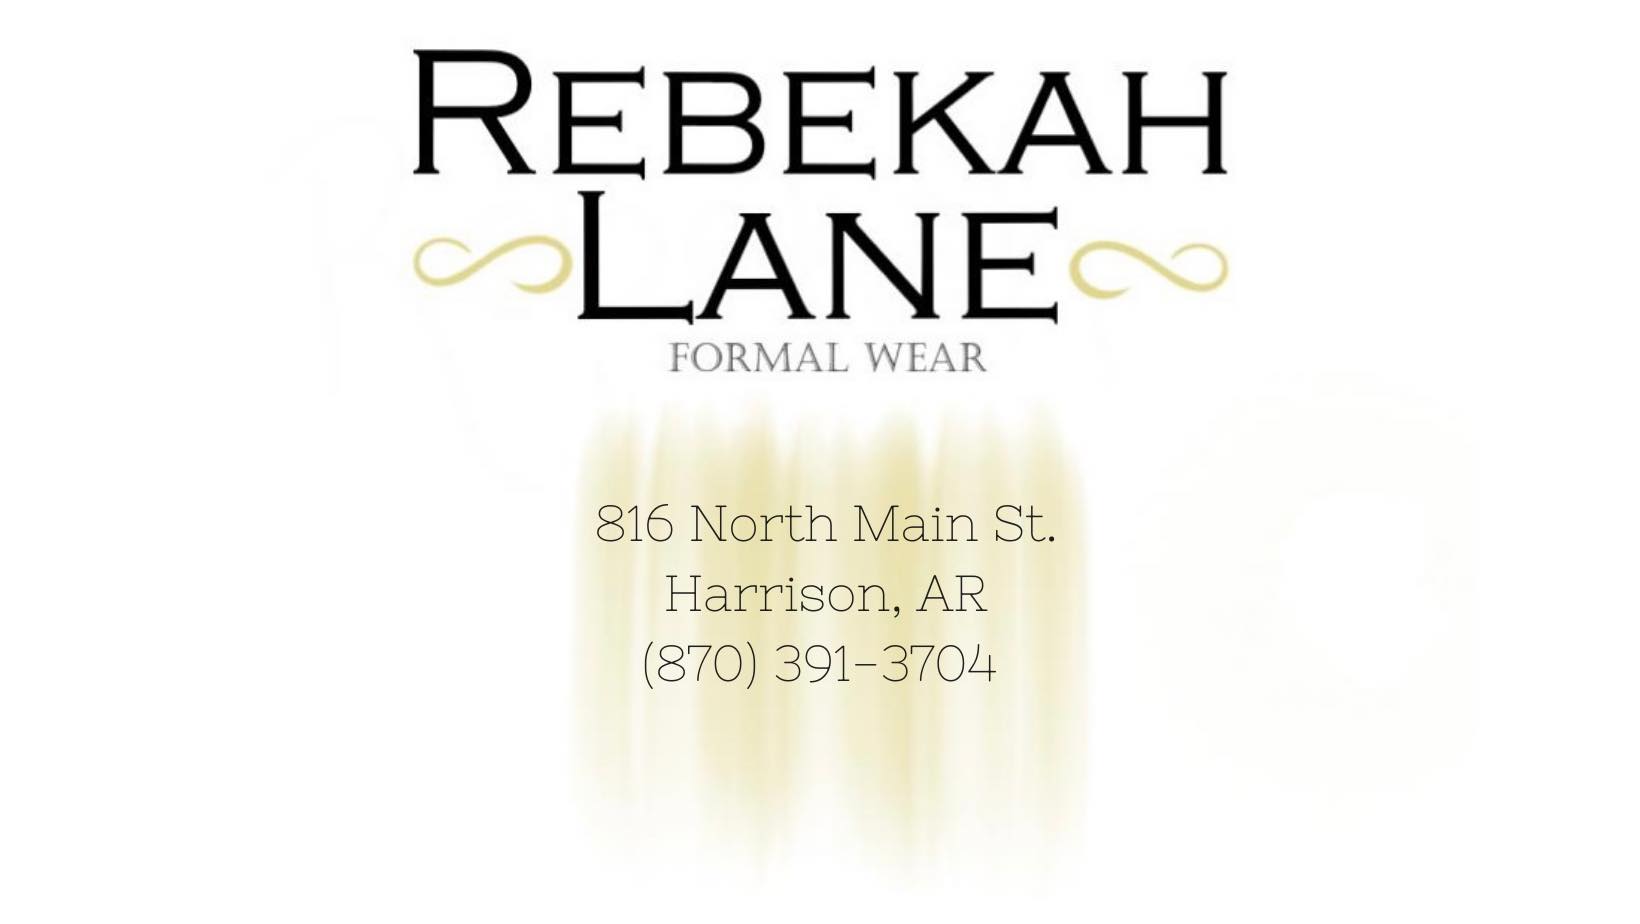 Rebekah Lane is now A Lorraine Formal Wear